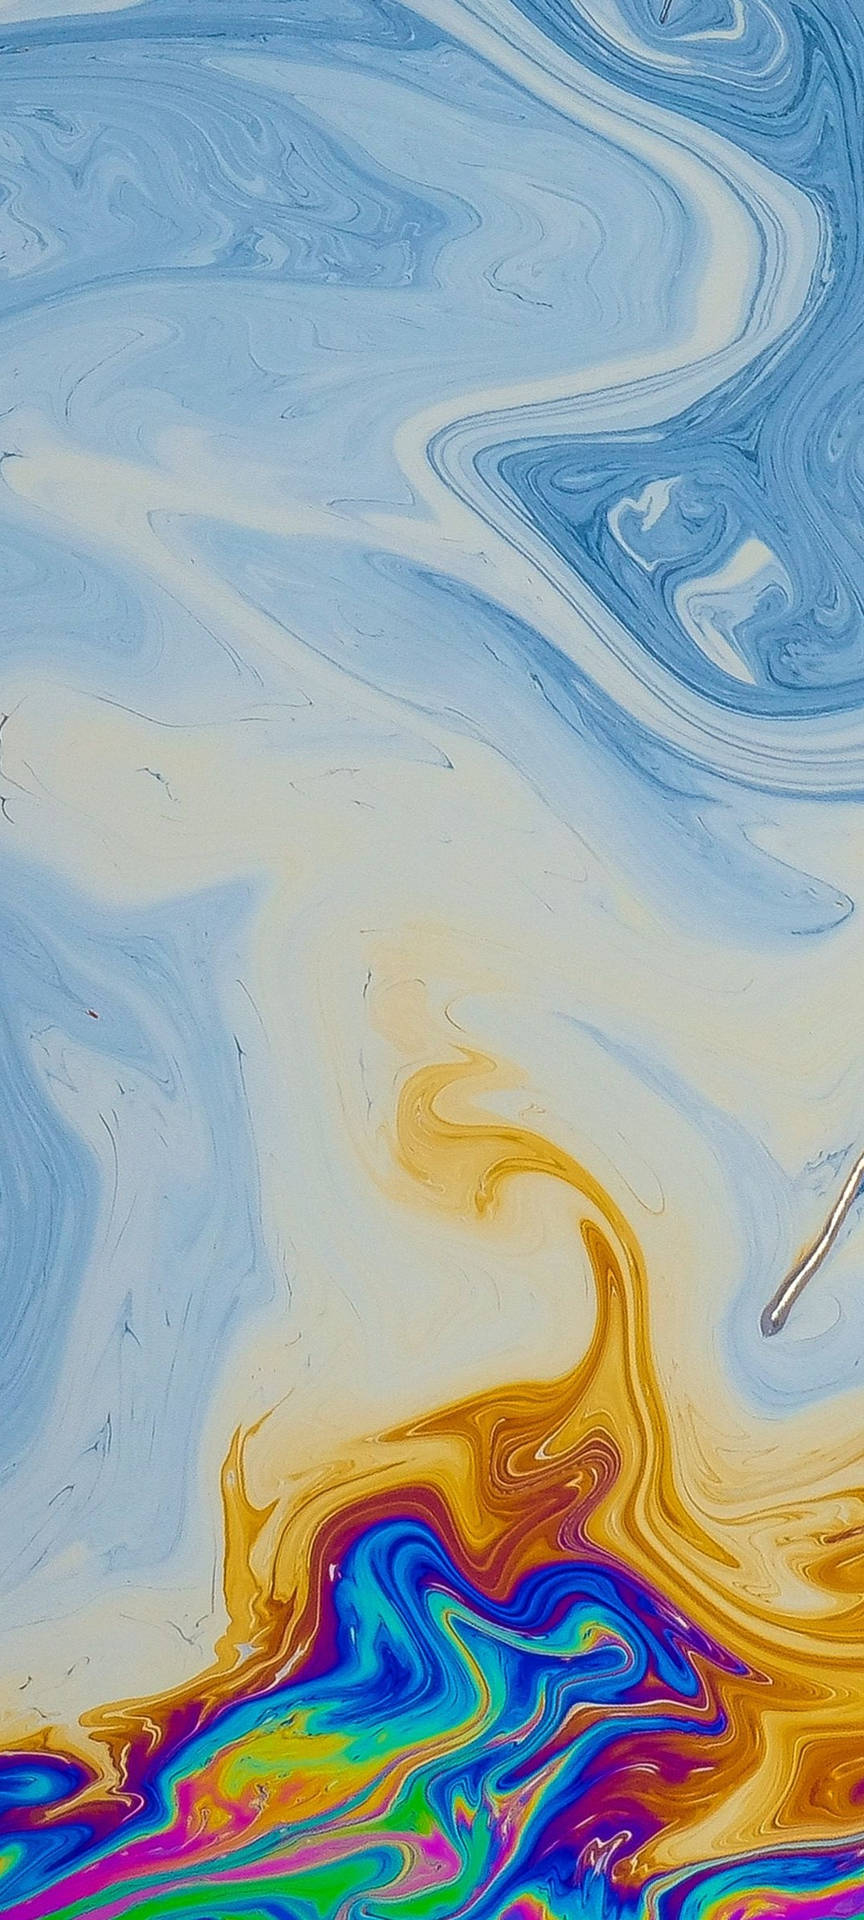 Farvestrålende olie på vand. Wallpaper